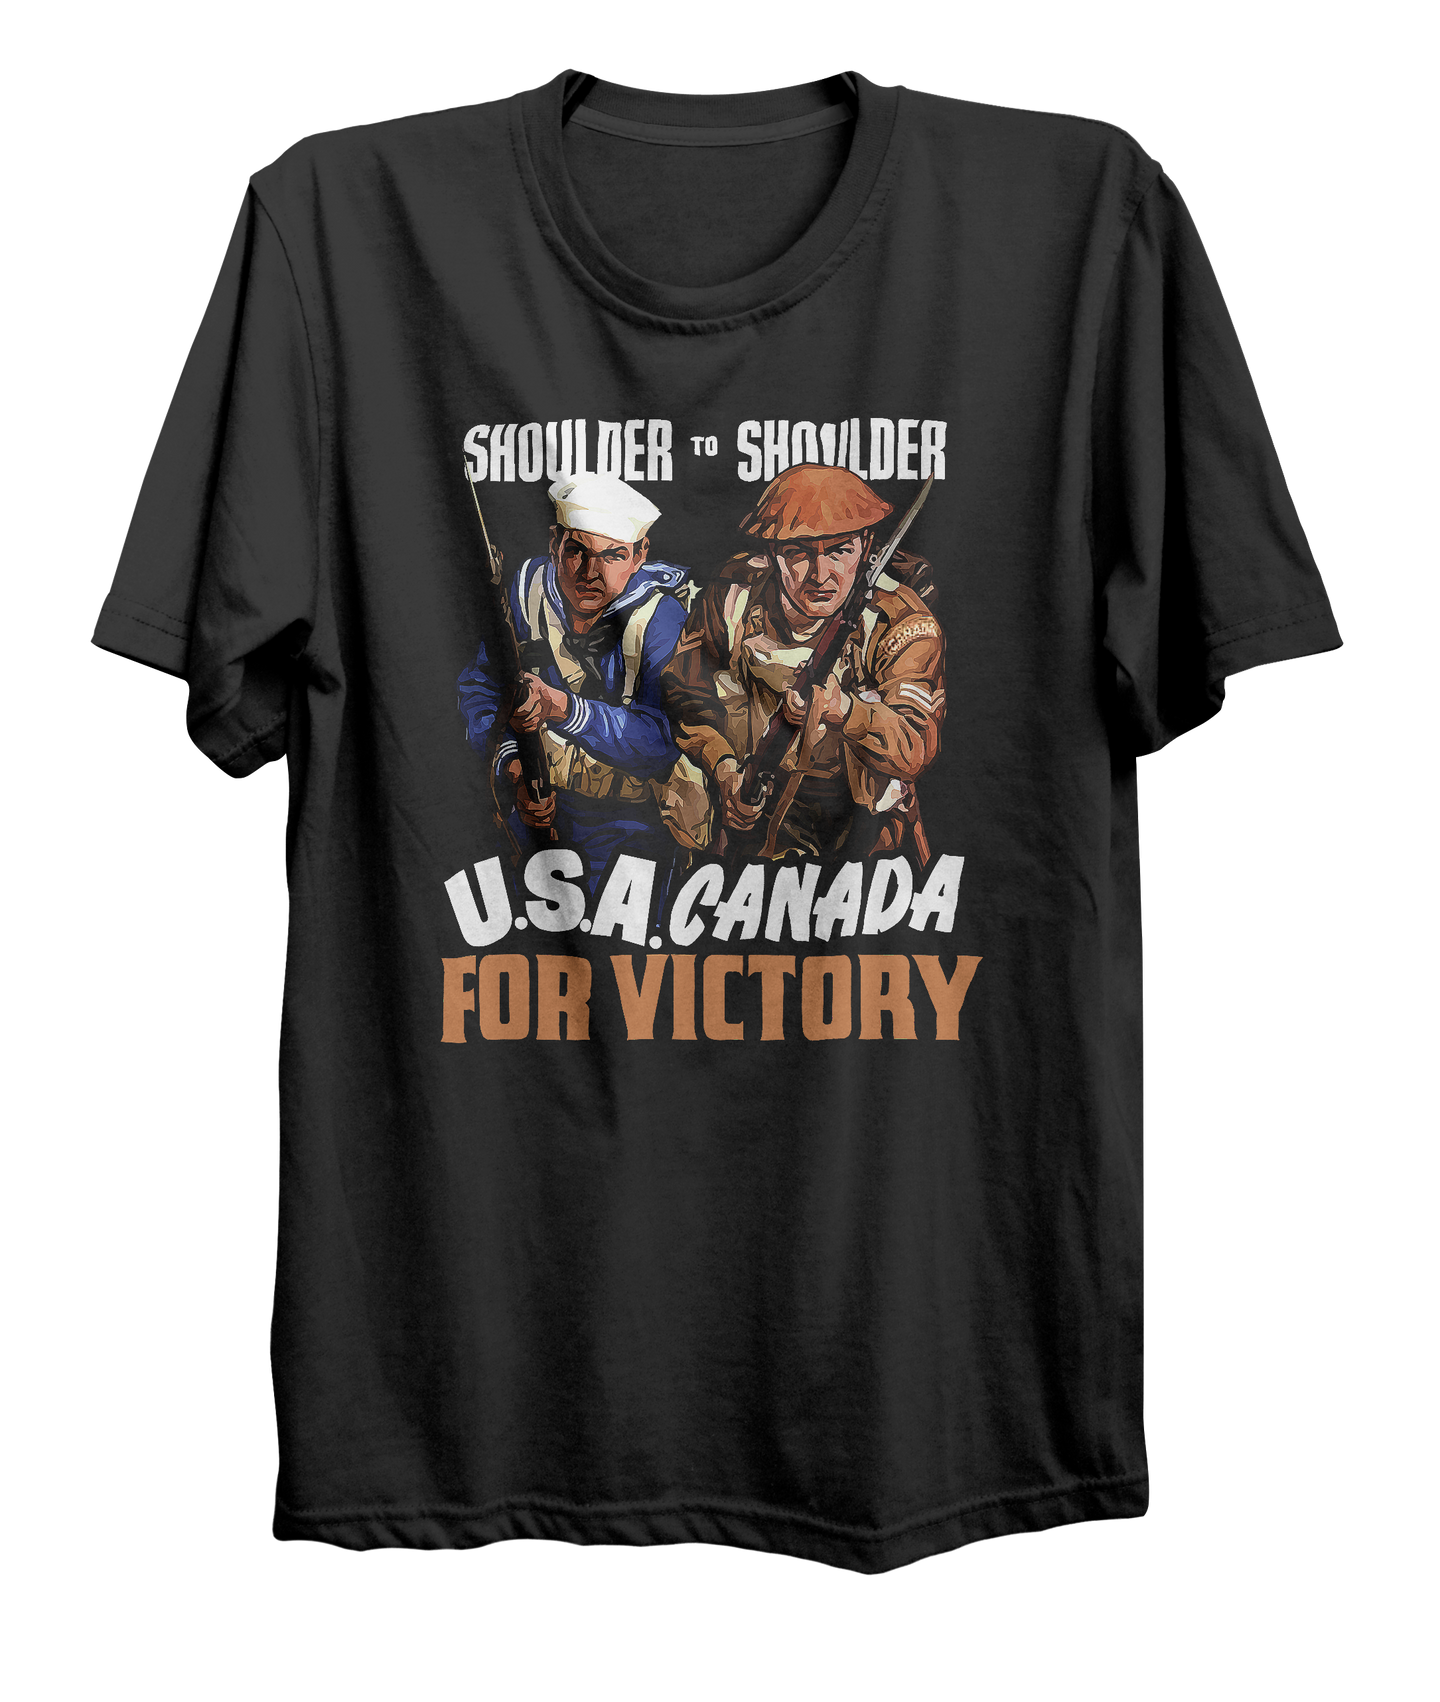 USA-Canada Shoulder to Shoulder World War 2 T-Shirt